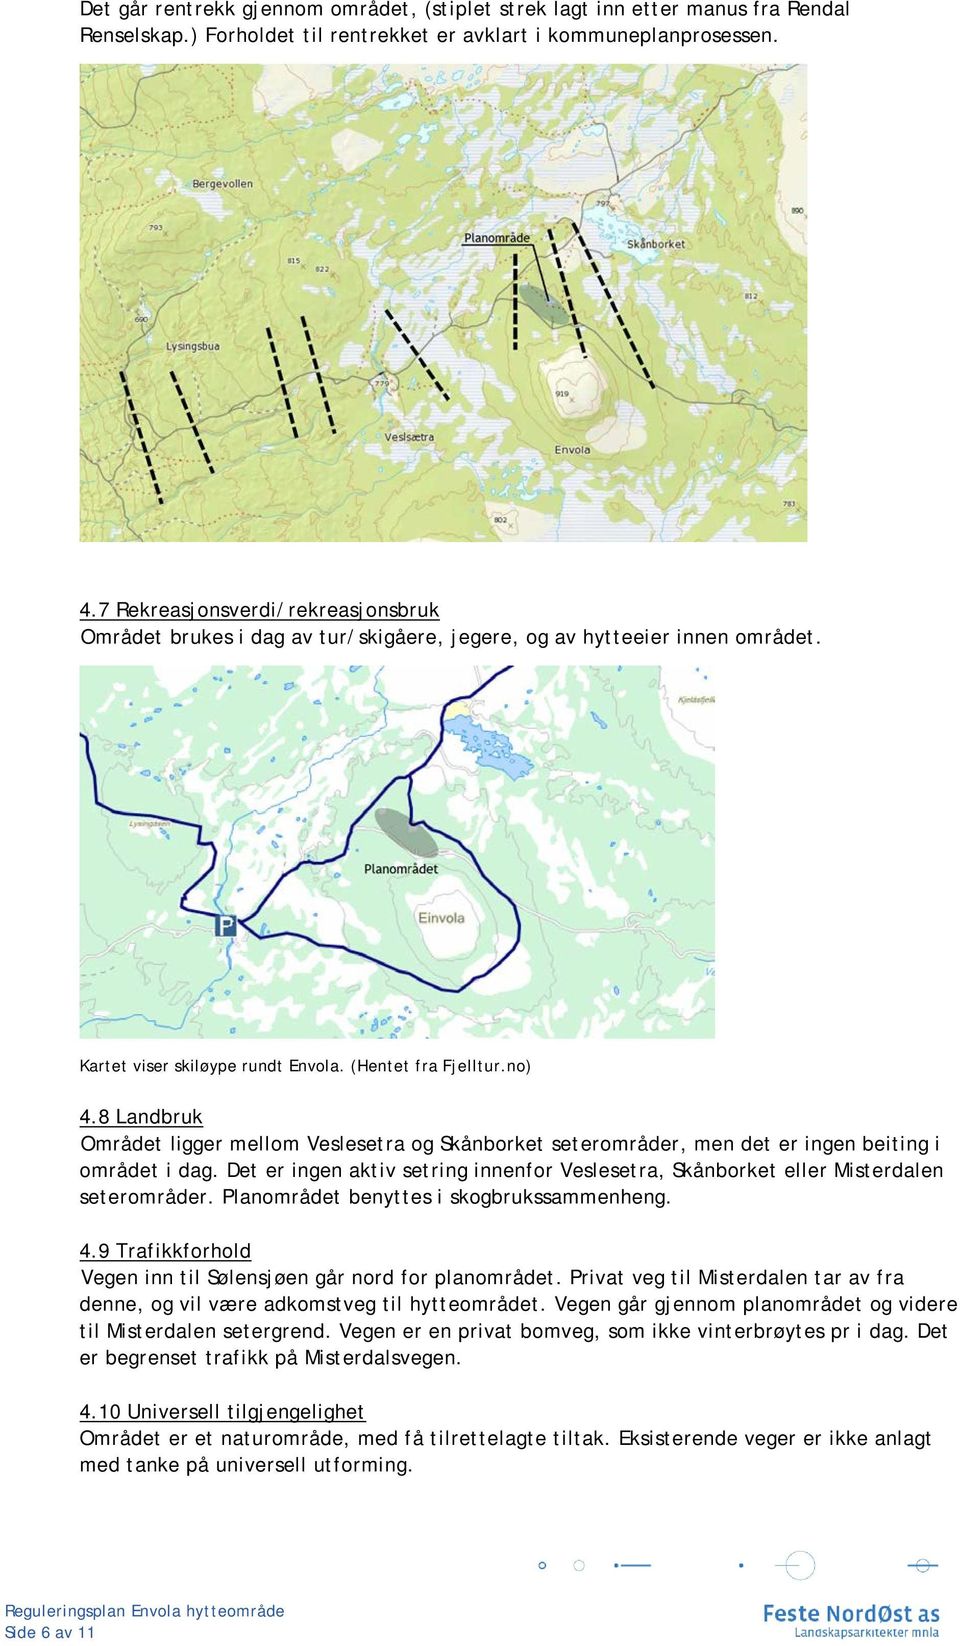 8 Landbruk Området ligger mellom Veslesetra og Skånborket seterområder, men det er ingen beiting i området i dag.